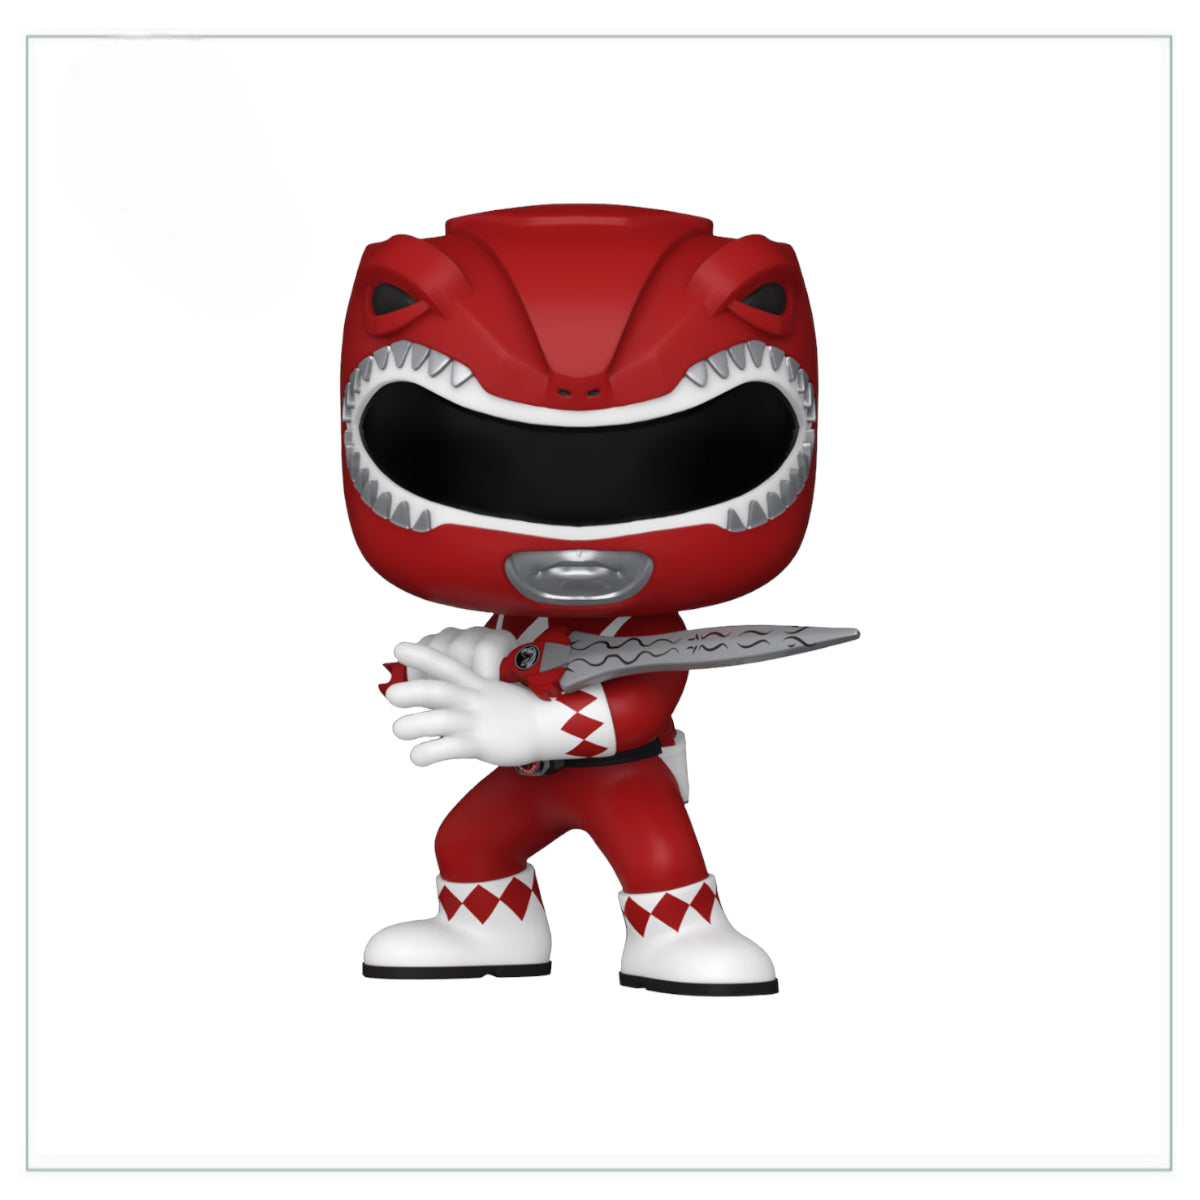 Red Ranger #1374 Funko Pop! - Power Rangers